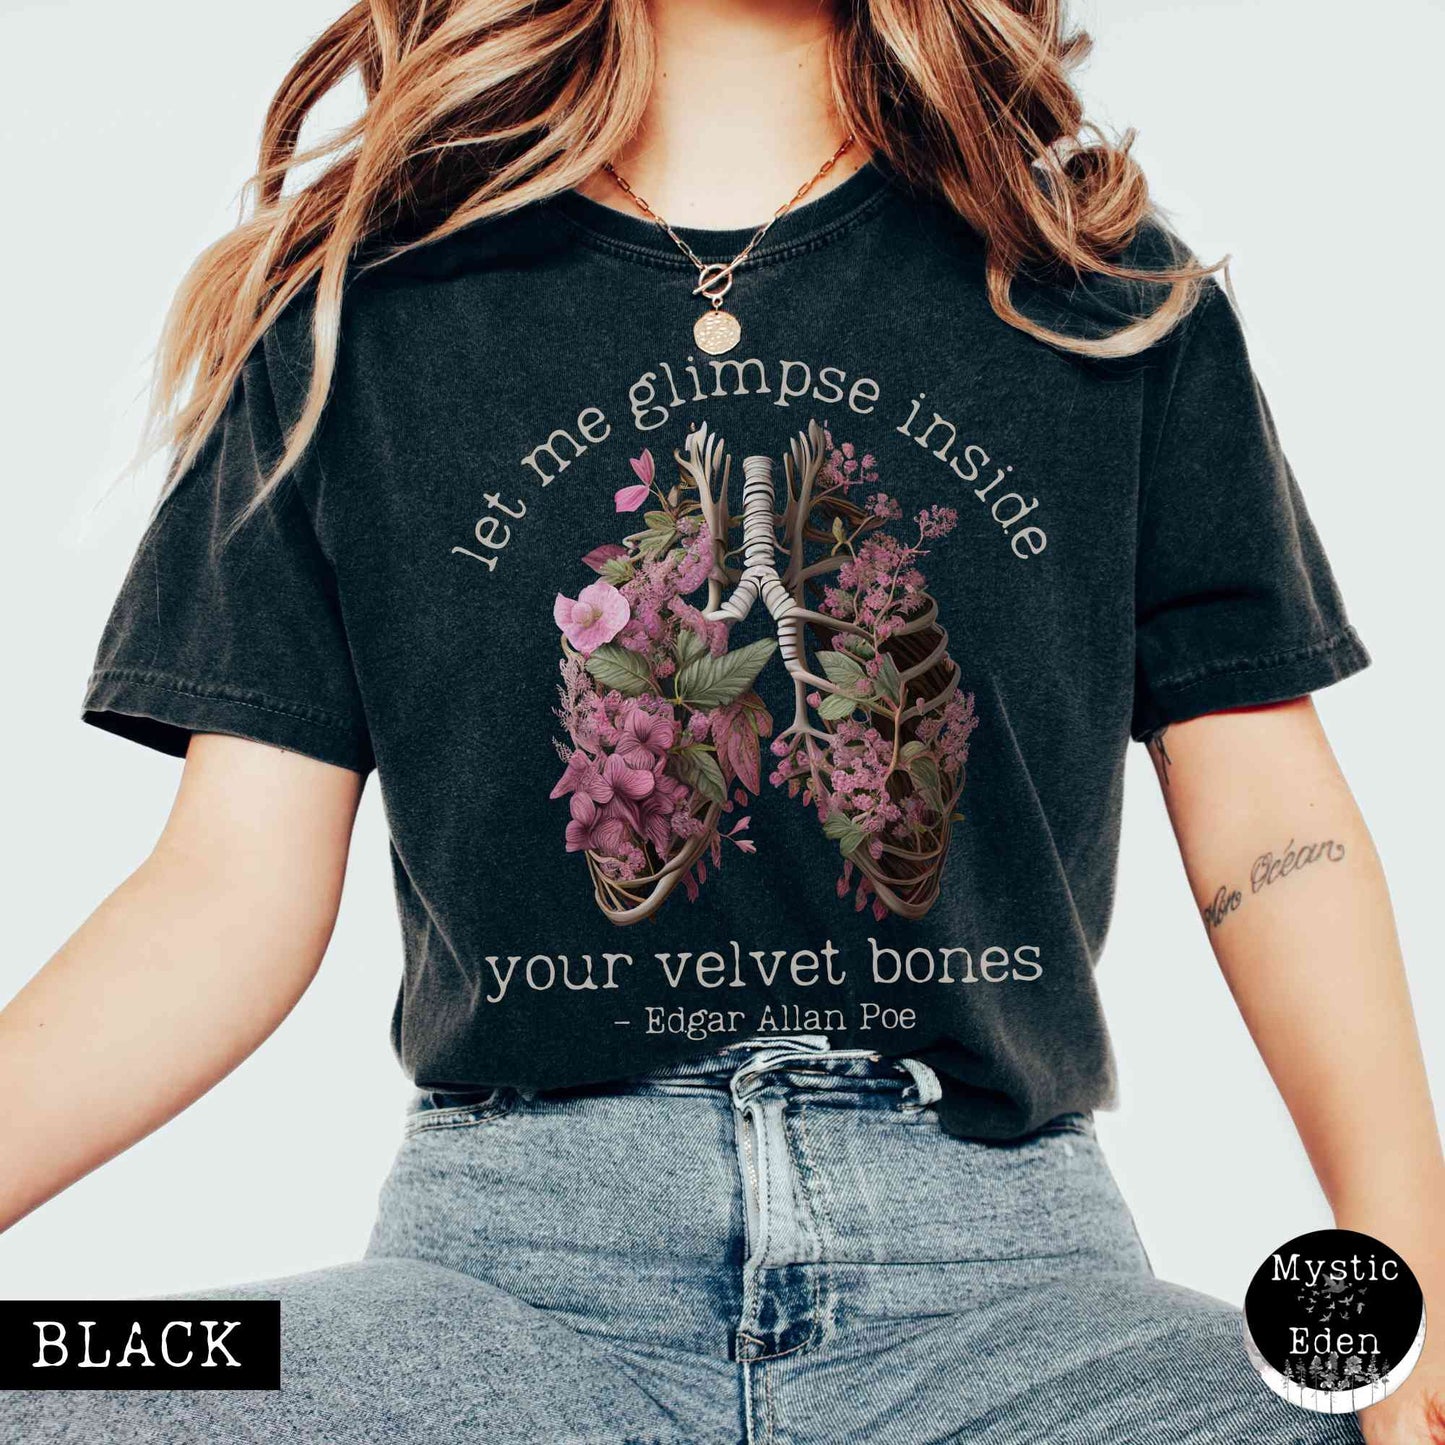 Edgar Allan Poe shirt - let me glimpse inside your velvet bones shirt